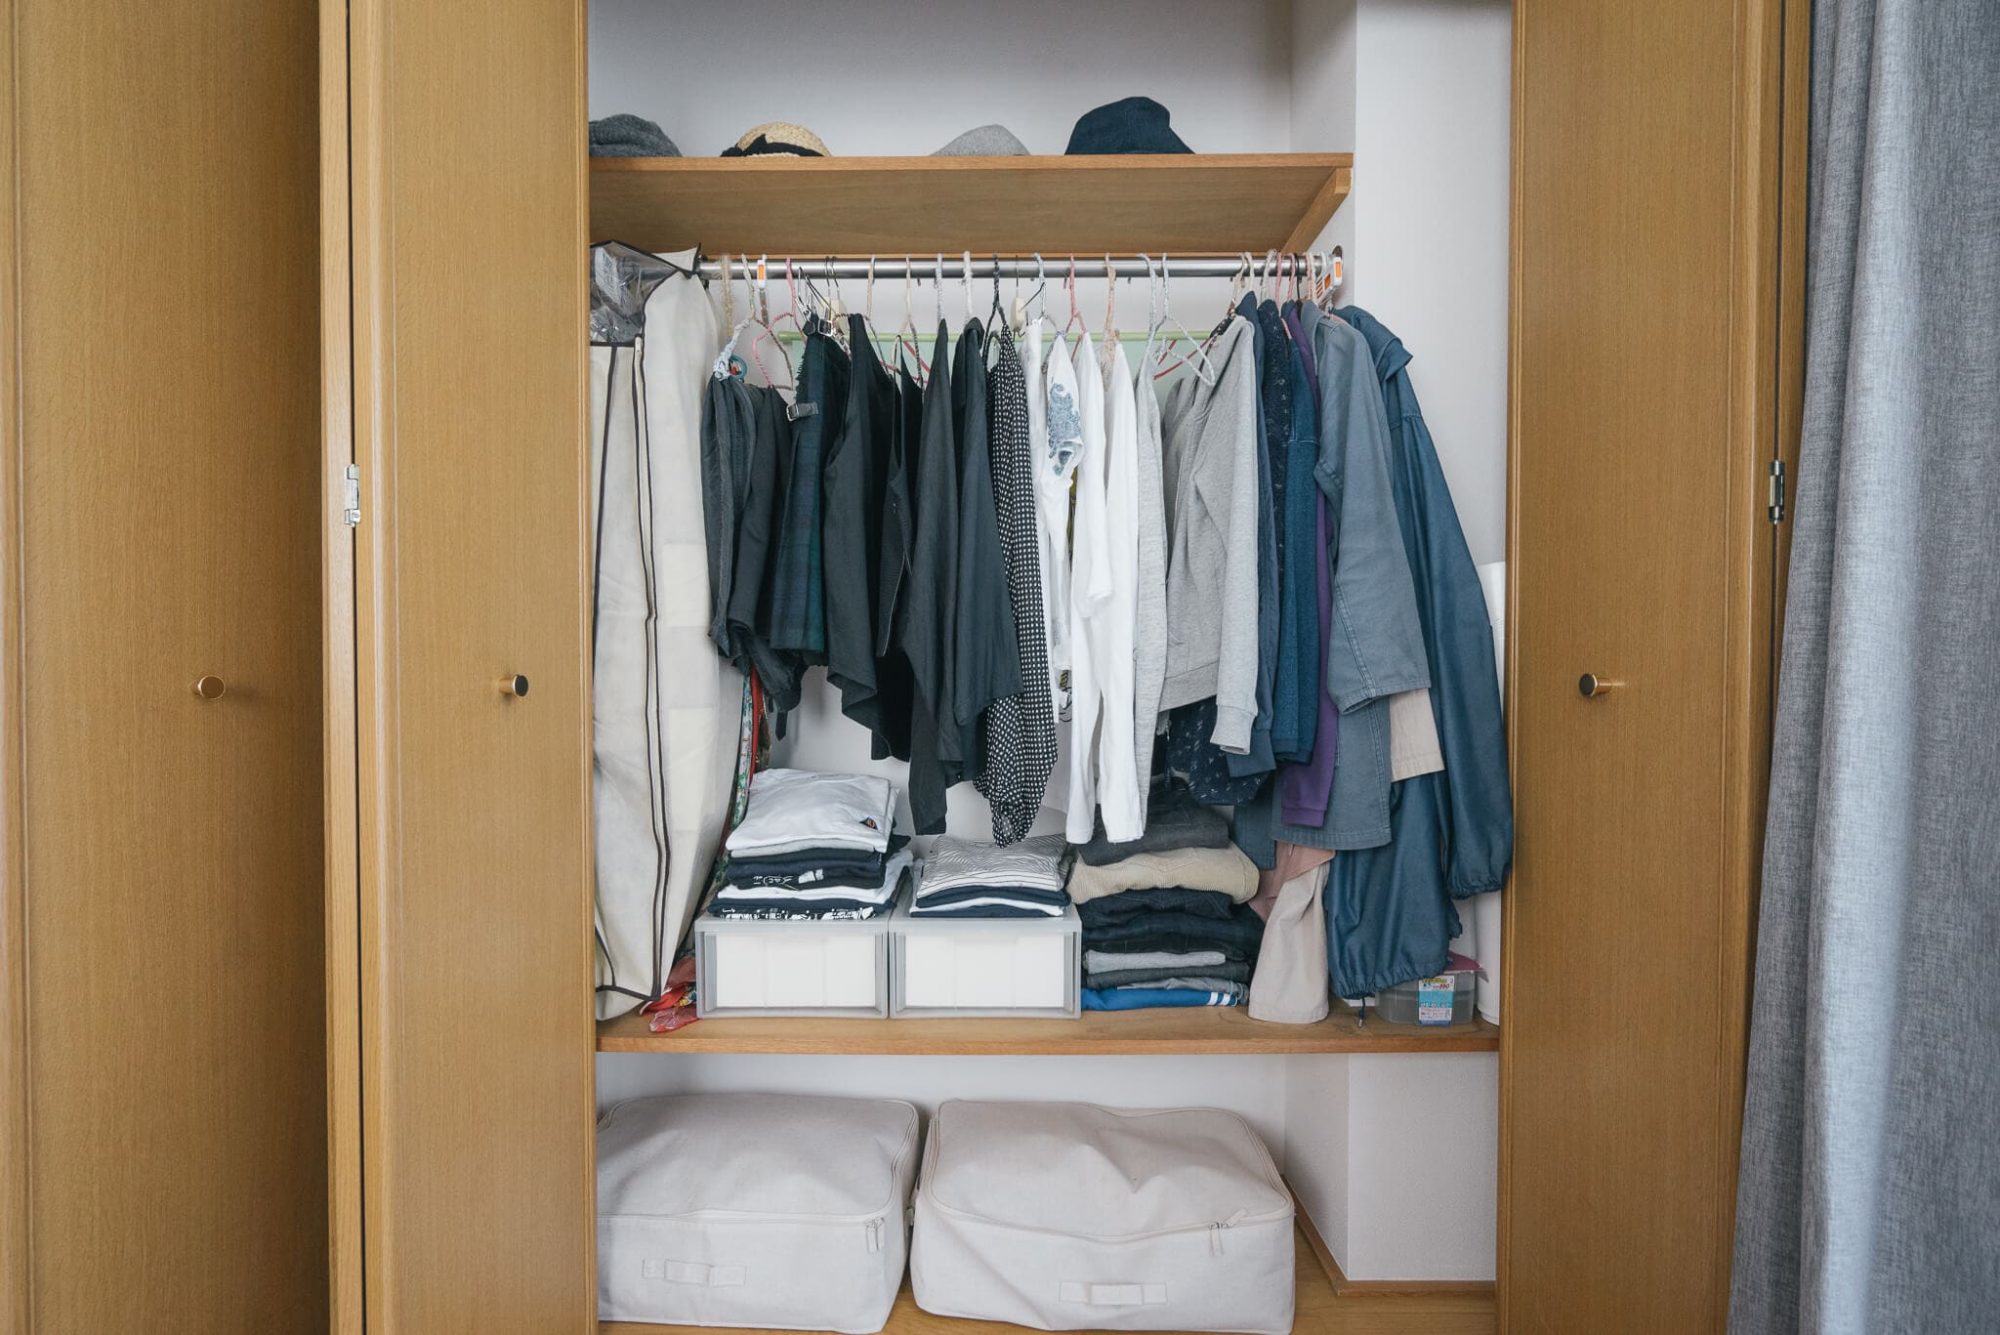 衣類や毛布を入れるならふんわり収納できるソフトボックスもおすすめ。取っ手付きでクローゼットの下やベッド下に入れても取り出しやすいのが特徴です。